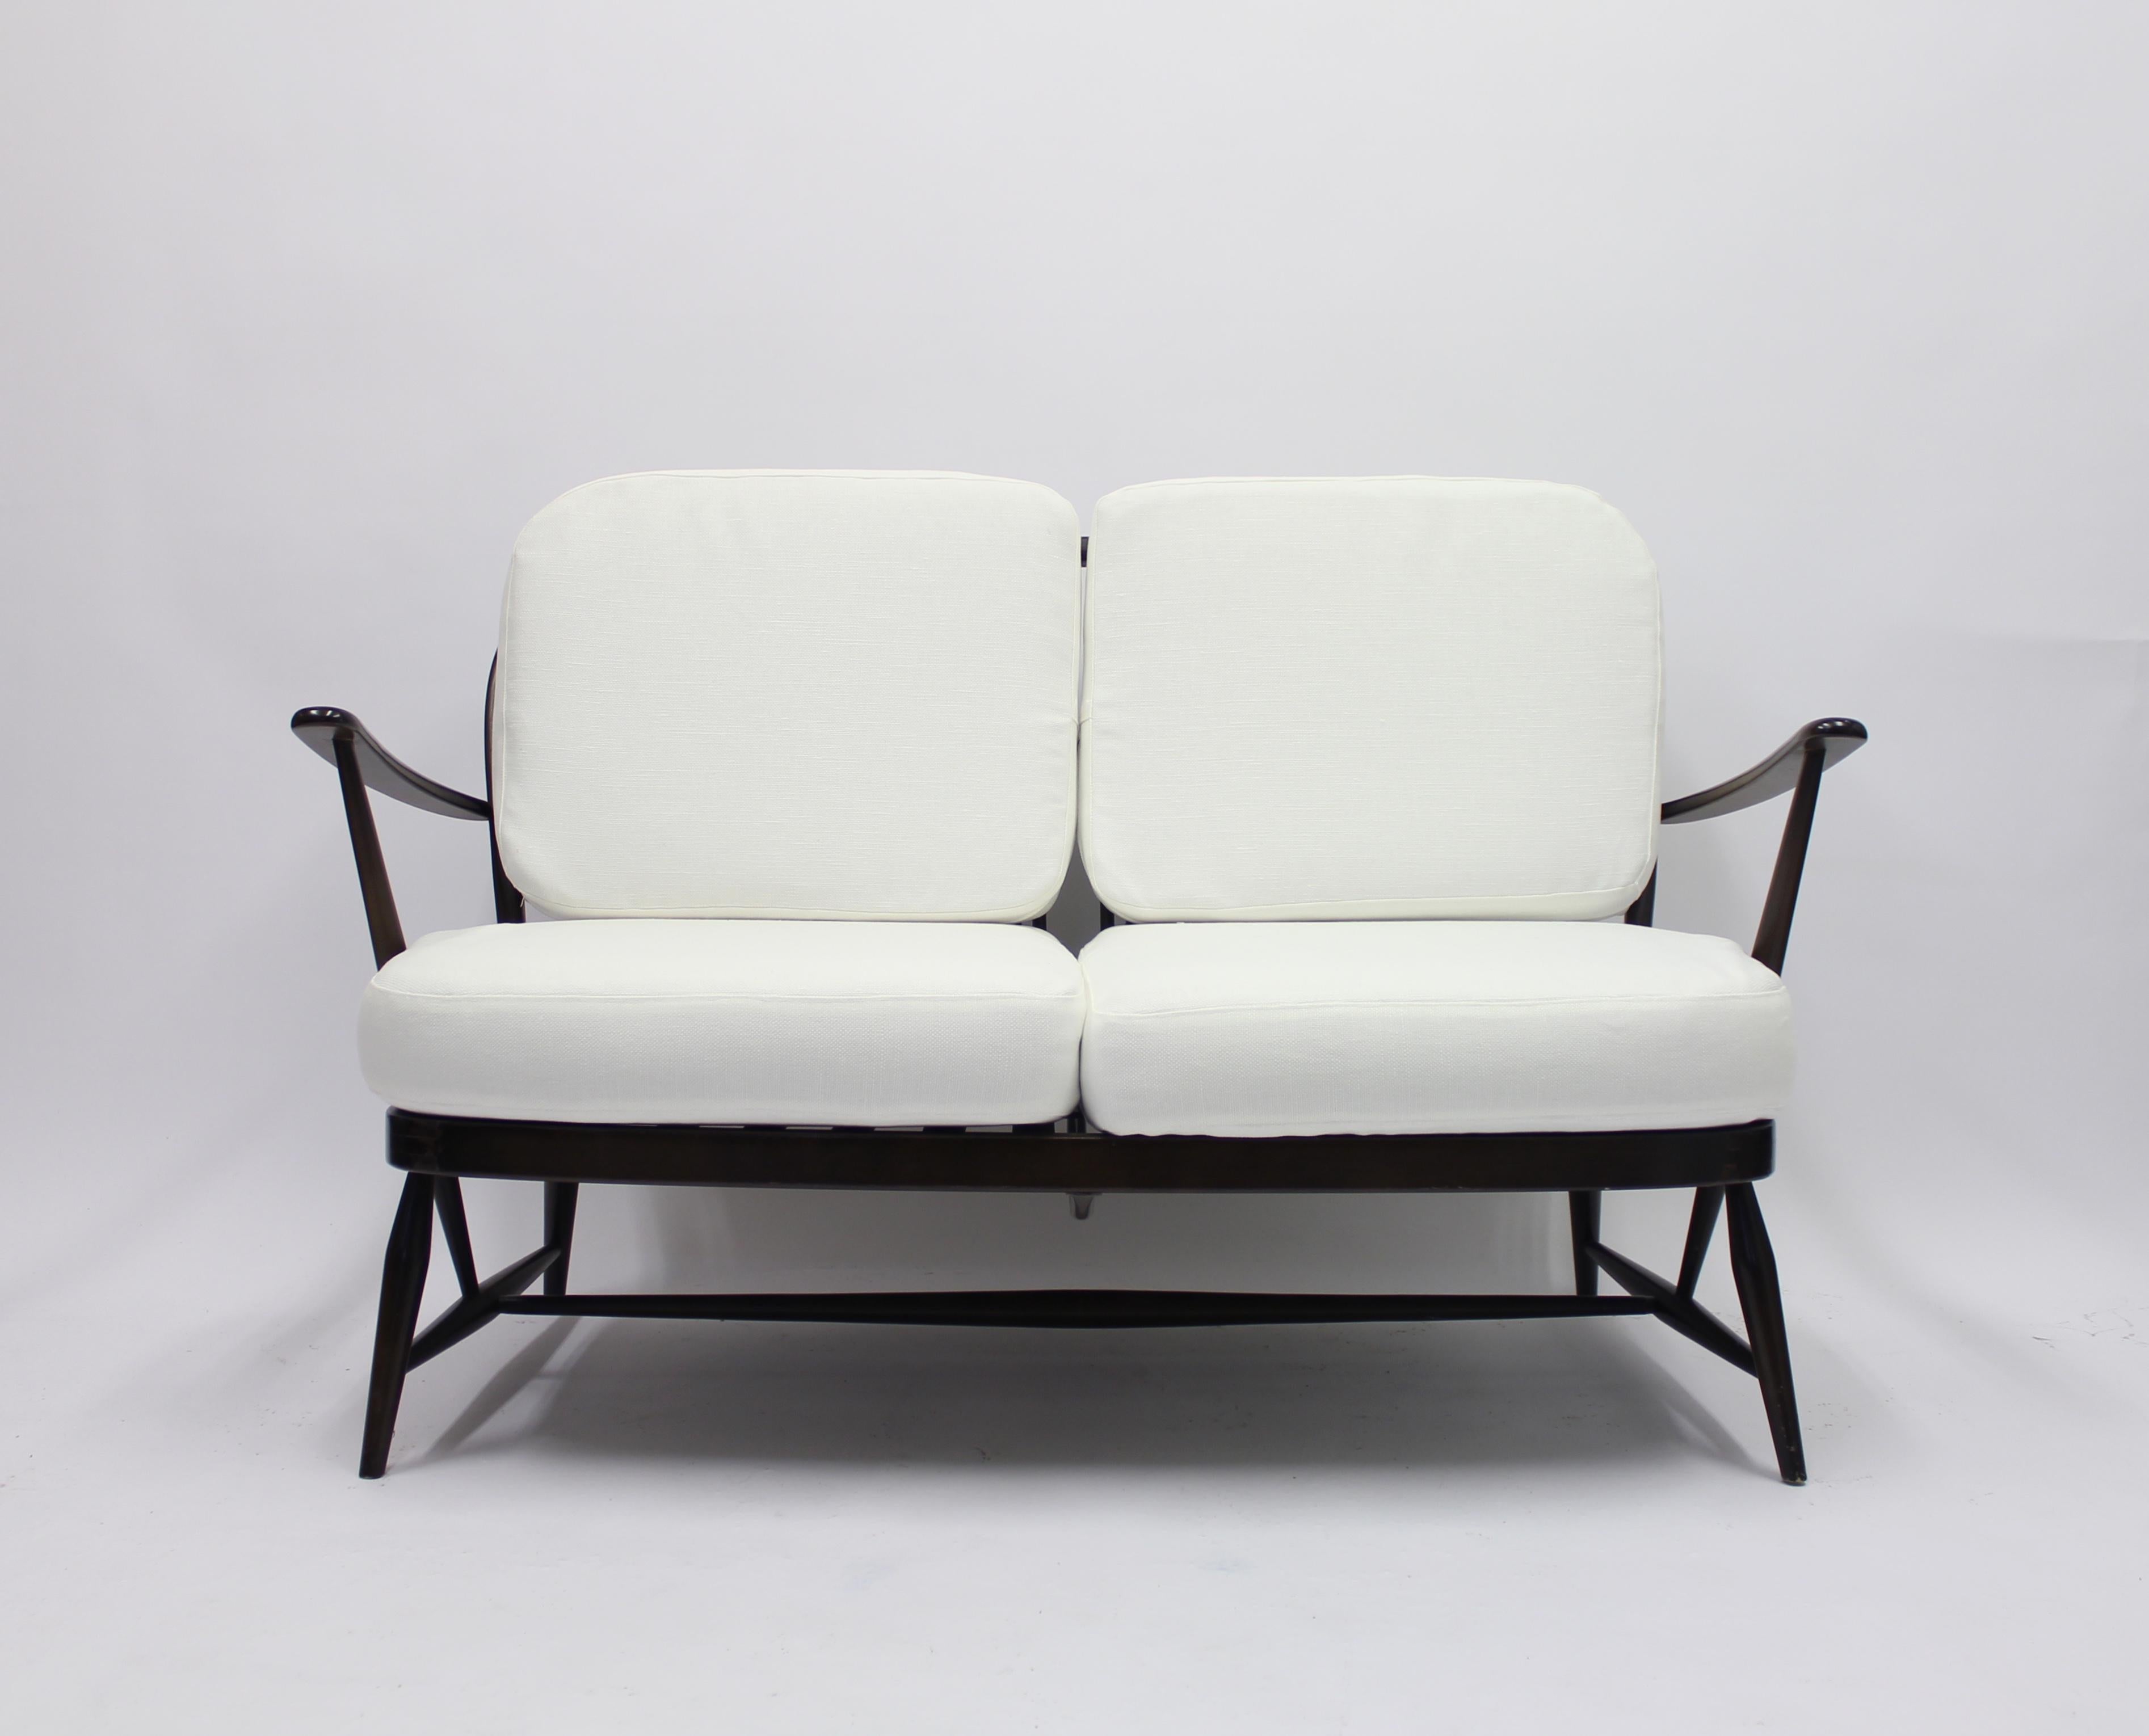 Zweisitziges Sofa:: entworfen von dem in Italien geborenen englischen Designer Lucian Ercolani für seine eigene Firma Ercol. Die Windsor-Reihe wurde in den 1950er Jahren entworfen:: obwohl dieses Beispiel aus den 1970er Jahren stammt. Neu gepolstert